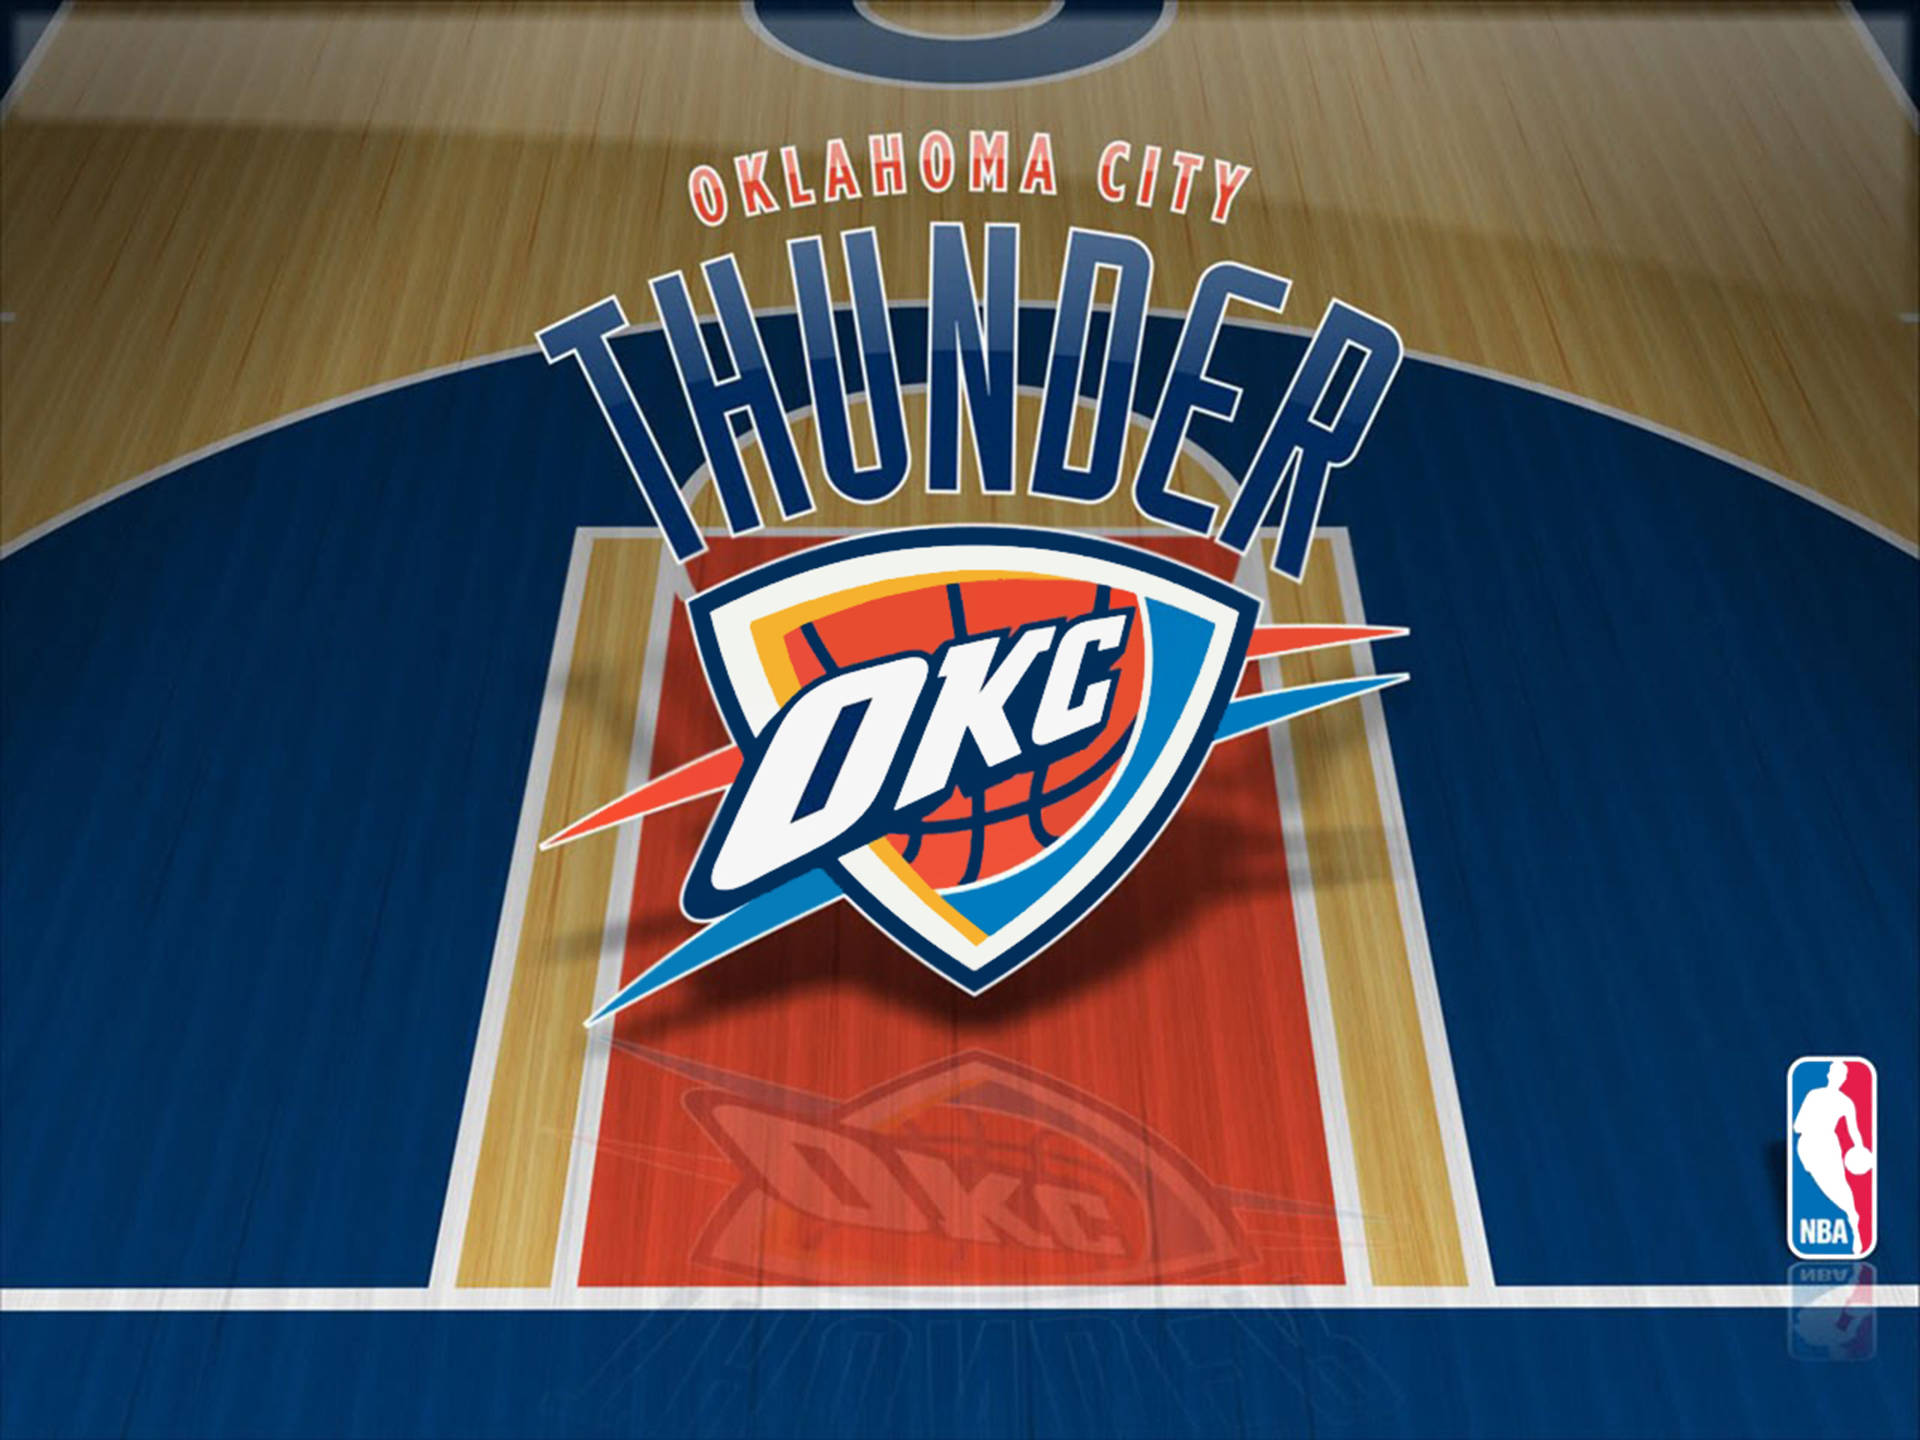 Oklahoma City Thunder Court Illustration Background